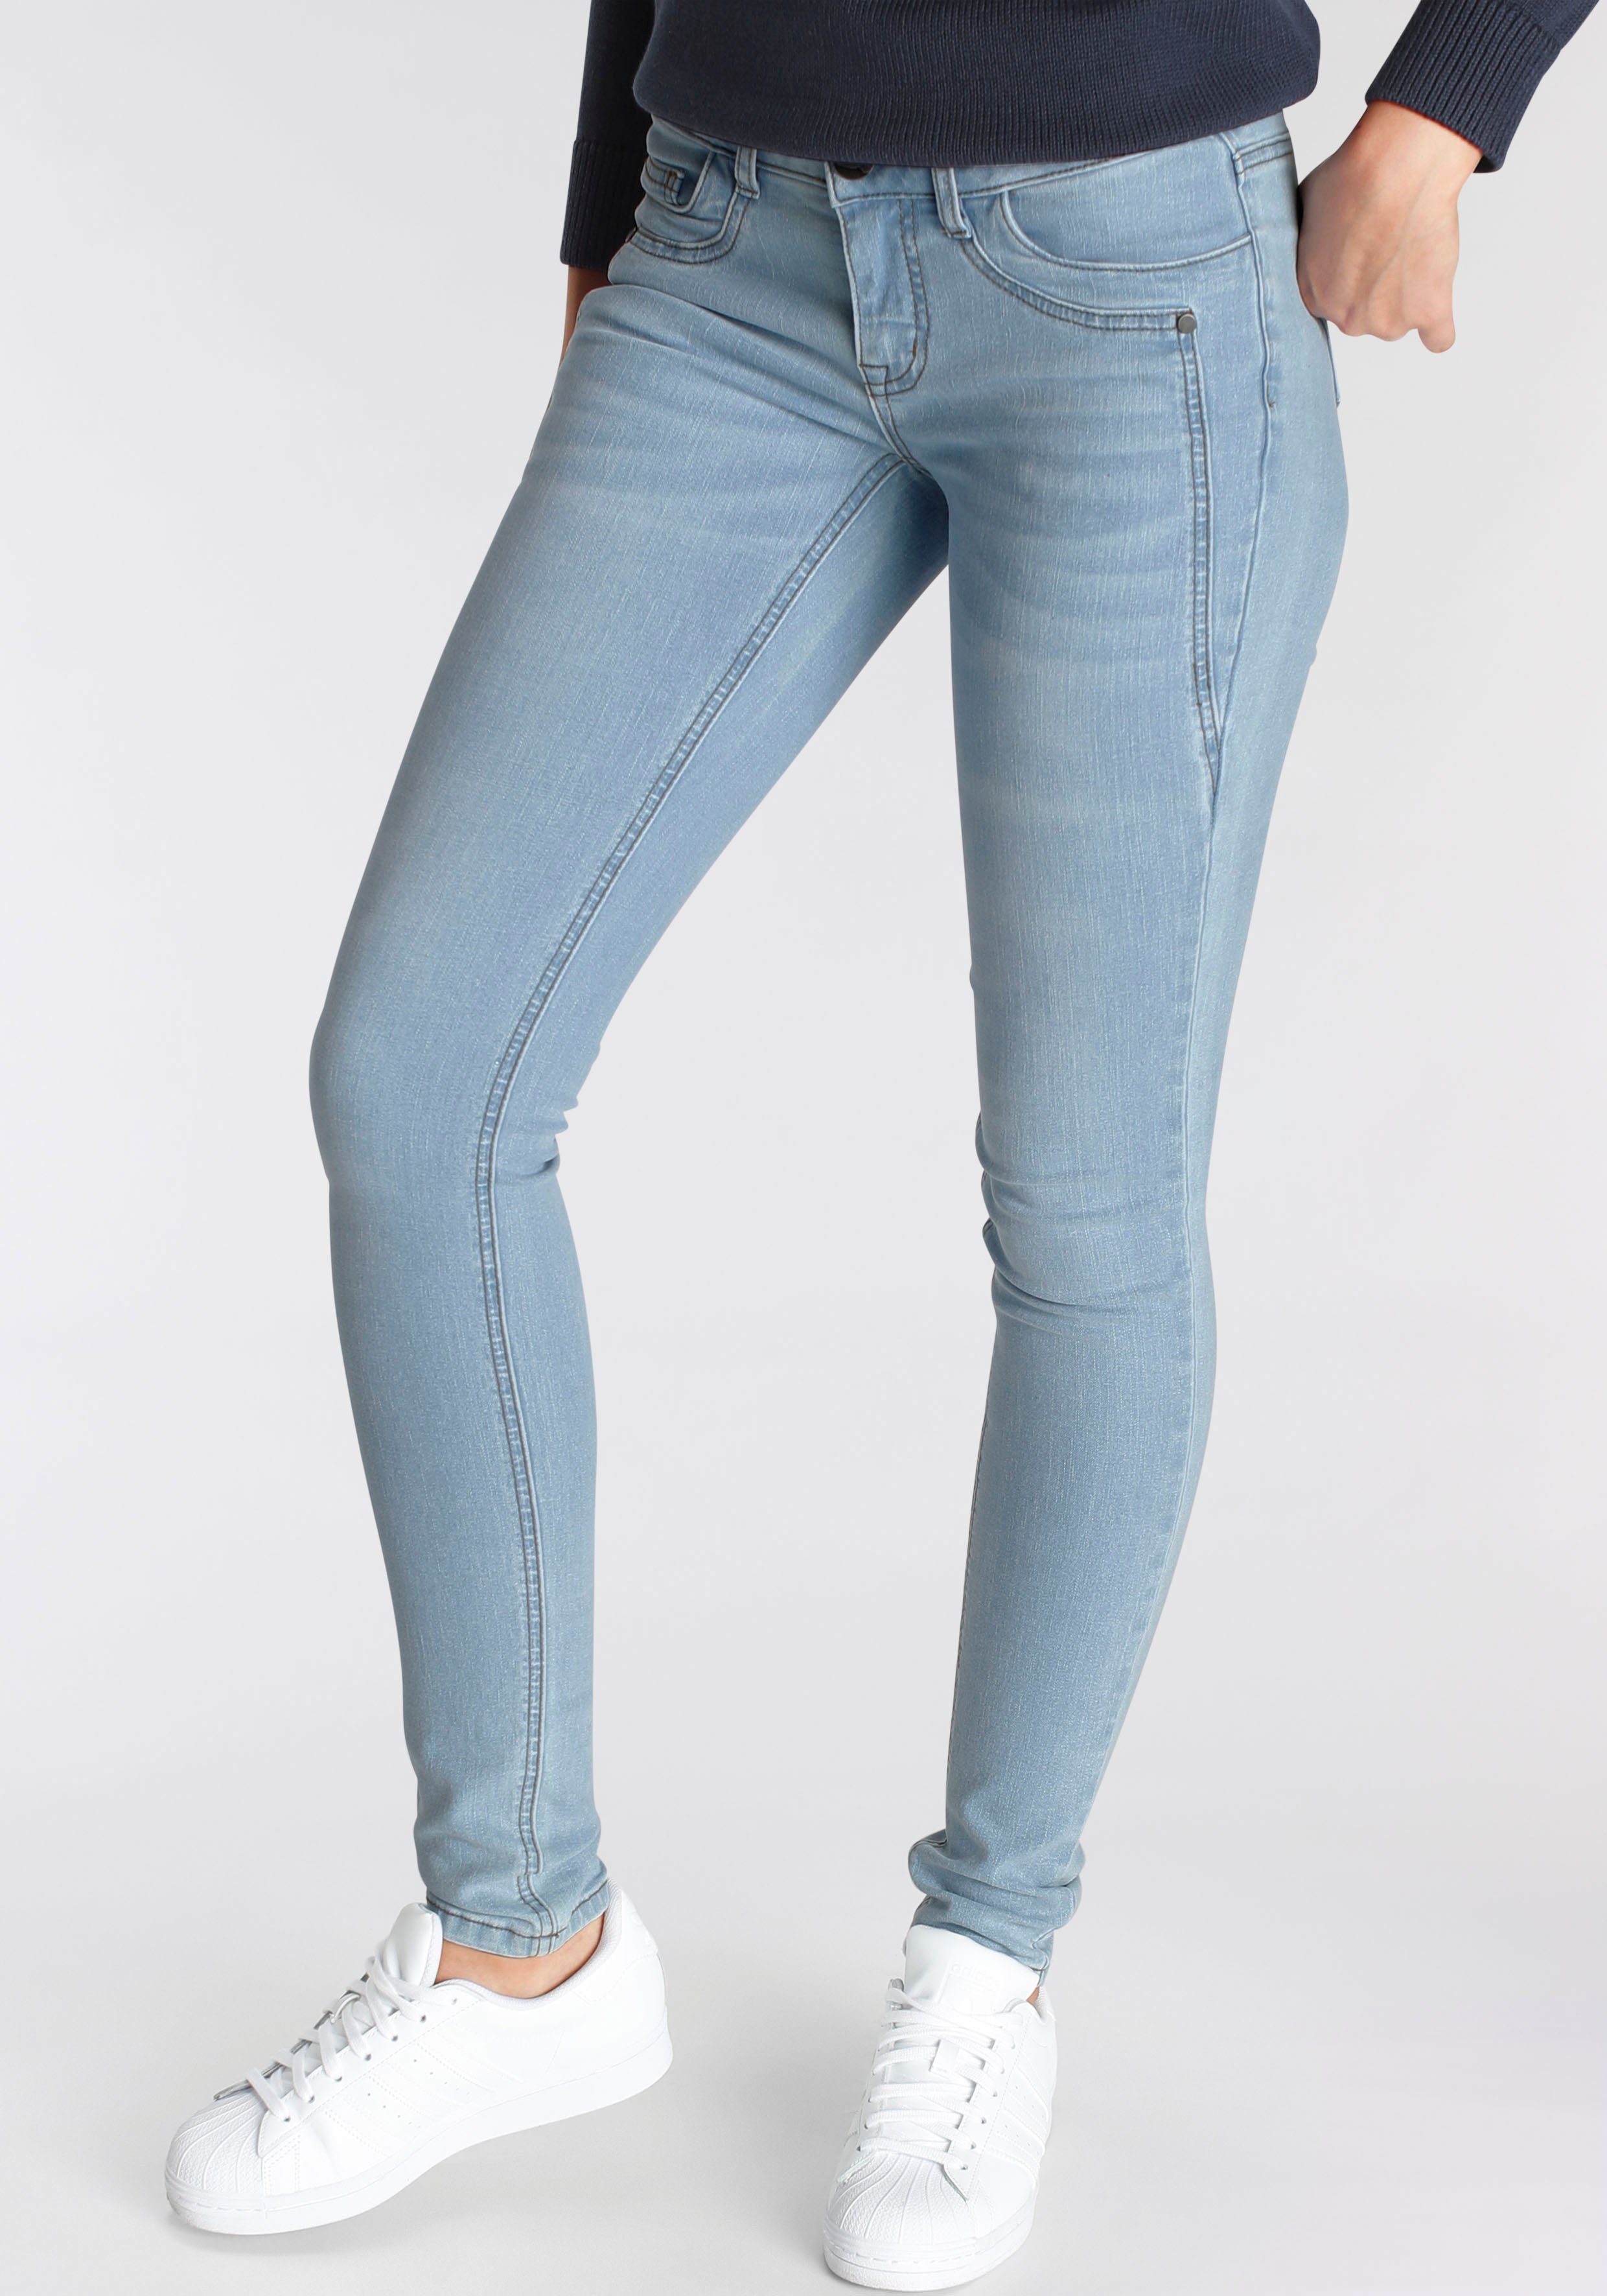 mit Arizona Waist Low bleached Keileinsätzen Skinny-fit-Jeans